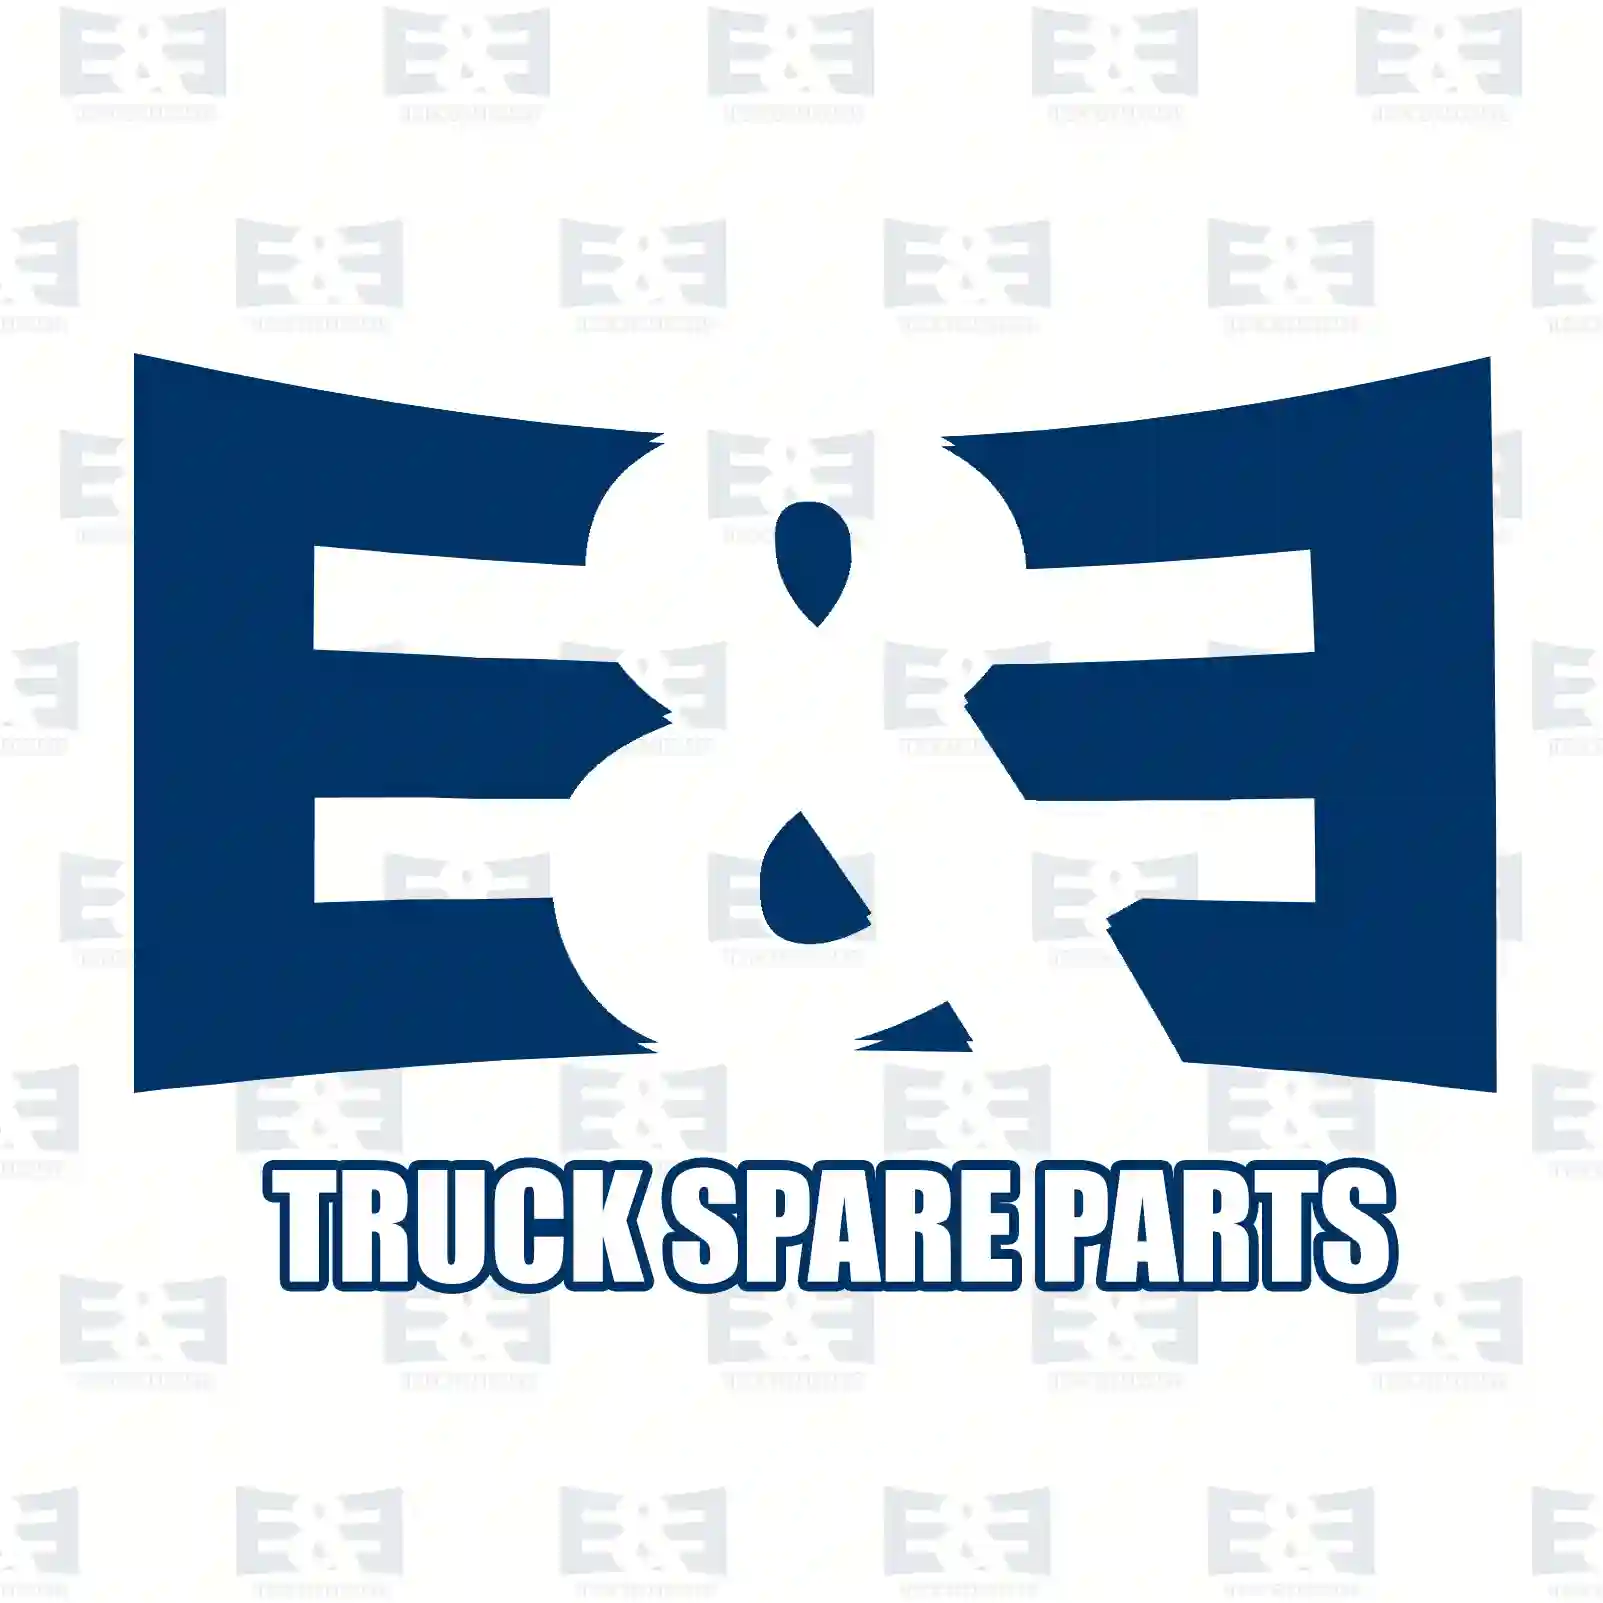 Pin, synchronizer unit, old version, 2E2279247, 1340001, 1340002, 1818496, 2063266, 381231 ||  2E2279247 E&E Truck Spare Parts | Truck Spare Parts, Auotomotive Spare Parts Pin, synchronizer unit, old version, 2E2279247, 1340001, 1340002, 1818496, 2063266, 381231 ||  2E2279247 E&E Truck Spare Parts | Truck Spare Parts, Auotomotive Spare Parts